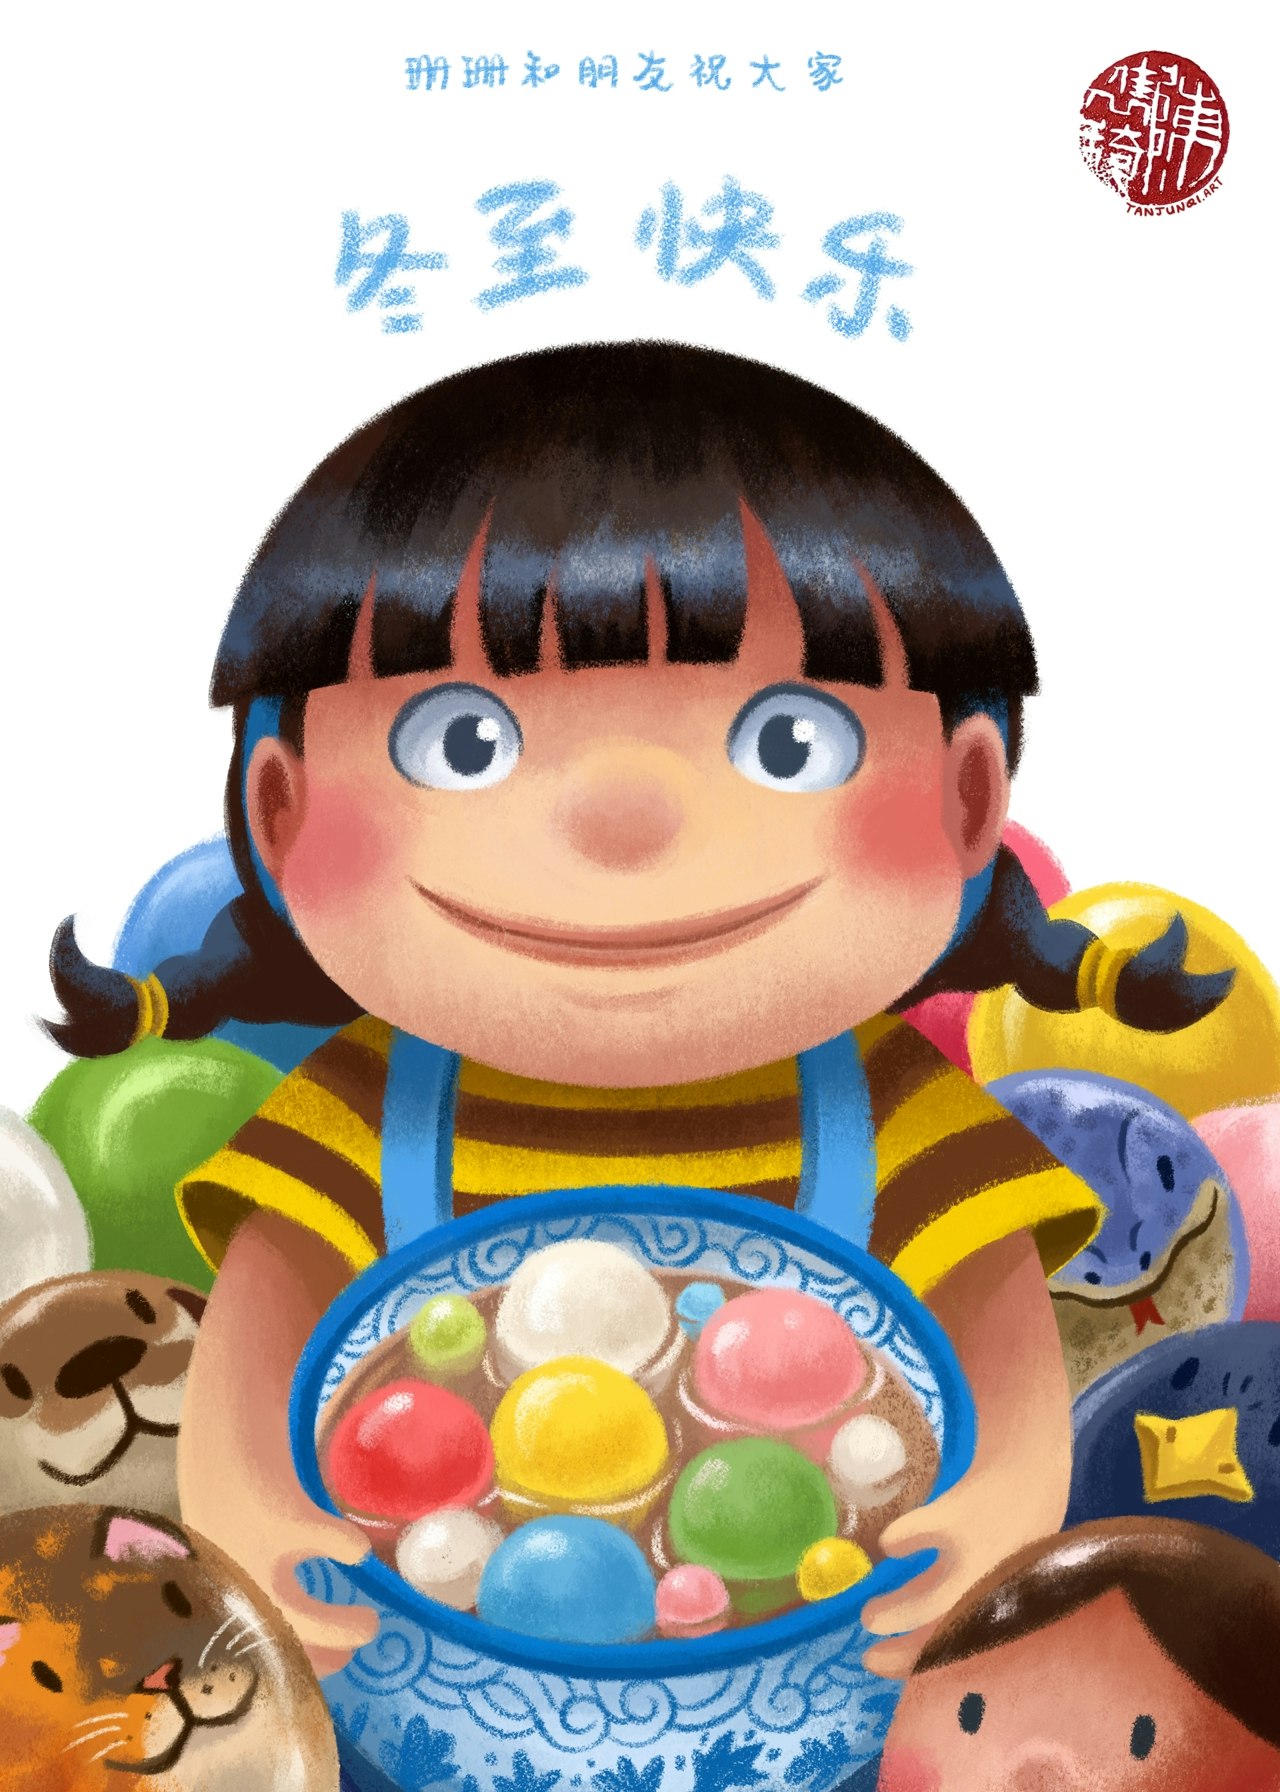 数码插画贺卡，描绘的是小女孩珊珊小脸上带着温和的微笑，手里捧着一大碗五颜六色的汤圆。她的周围就是她的动物朋友们和妈妈的‘汤圆化身’。